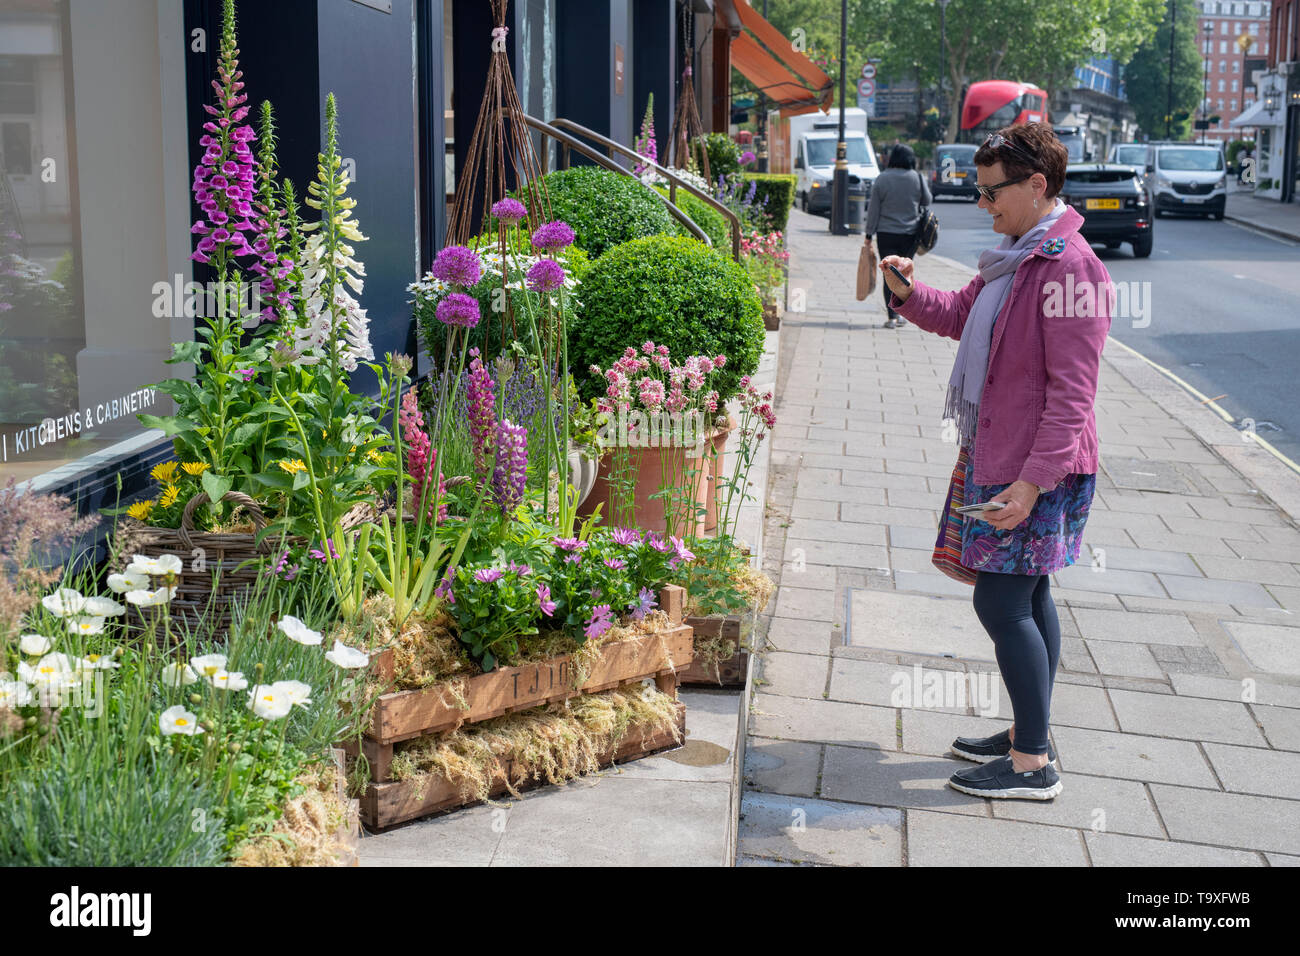 Display floreale al di fuori del negozio Linley a Pimlico Road per il Chelsea in Fiore 2019. Il quartiere di Belgravia a Londra, Inghilterra Foto Stock